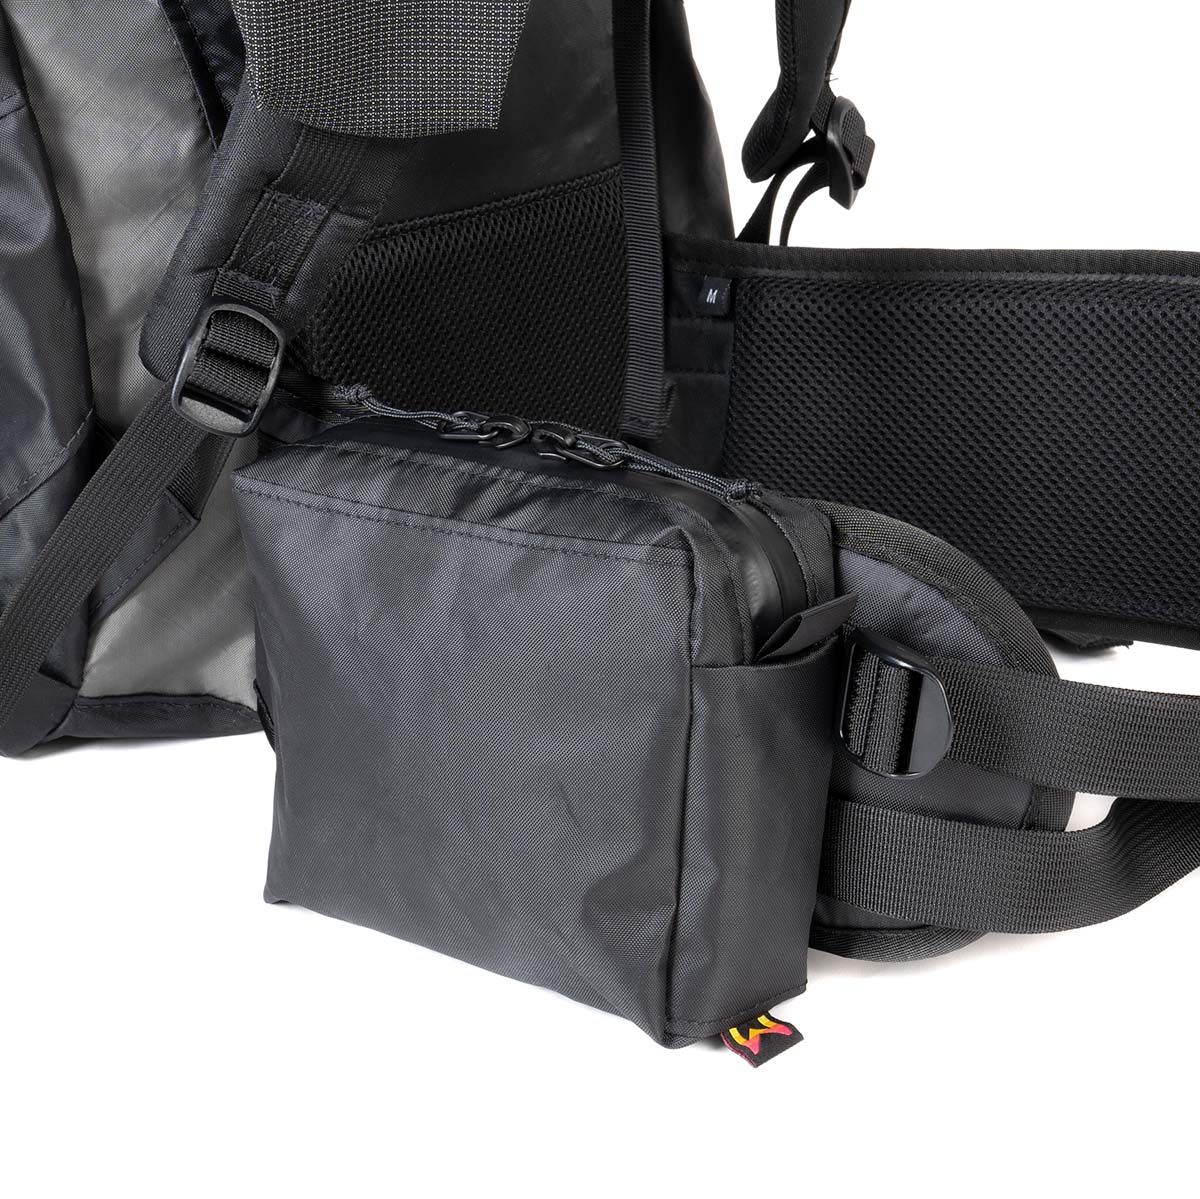 Hip Belt Pocket  Waymark Gear Co  Ultralight Backpacks  Waymark Gear  Company